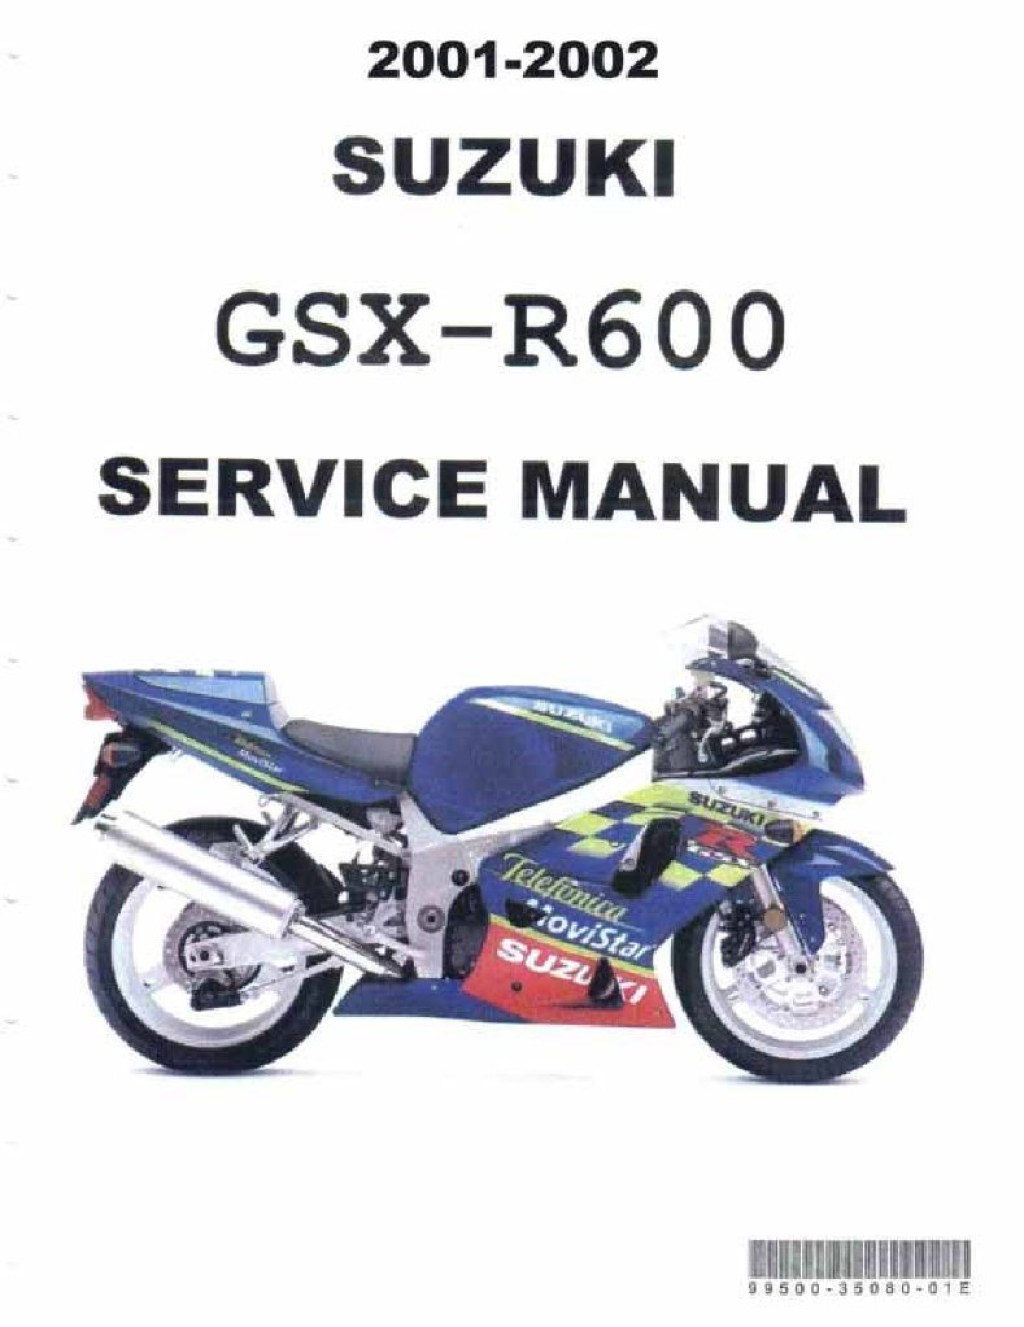 02 suzuki gsxr 600 manual pdf - k GSXR  Service Manual  PDF